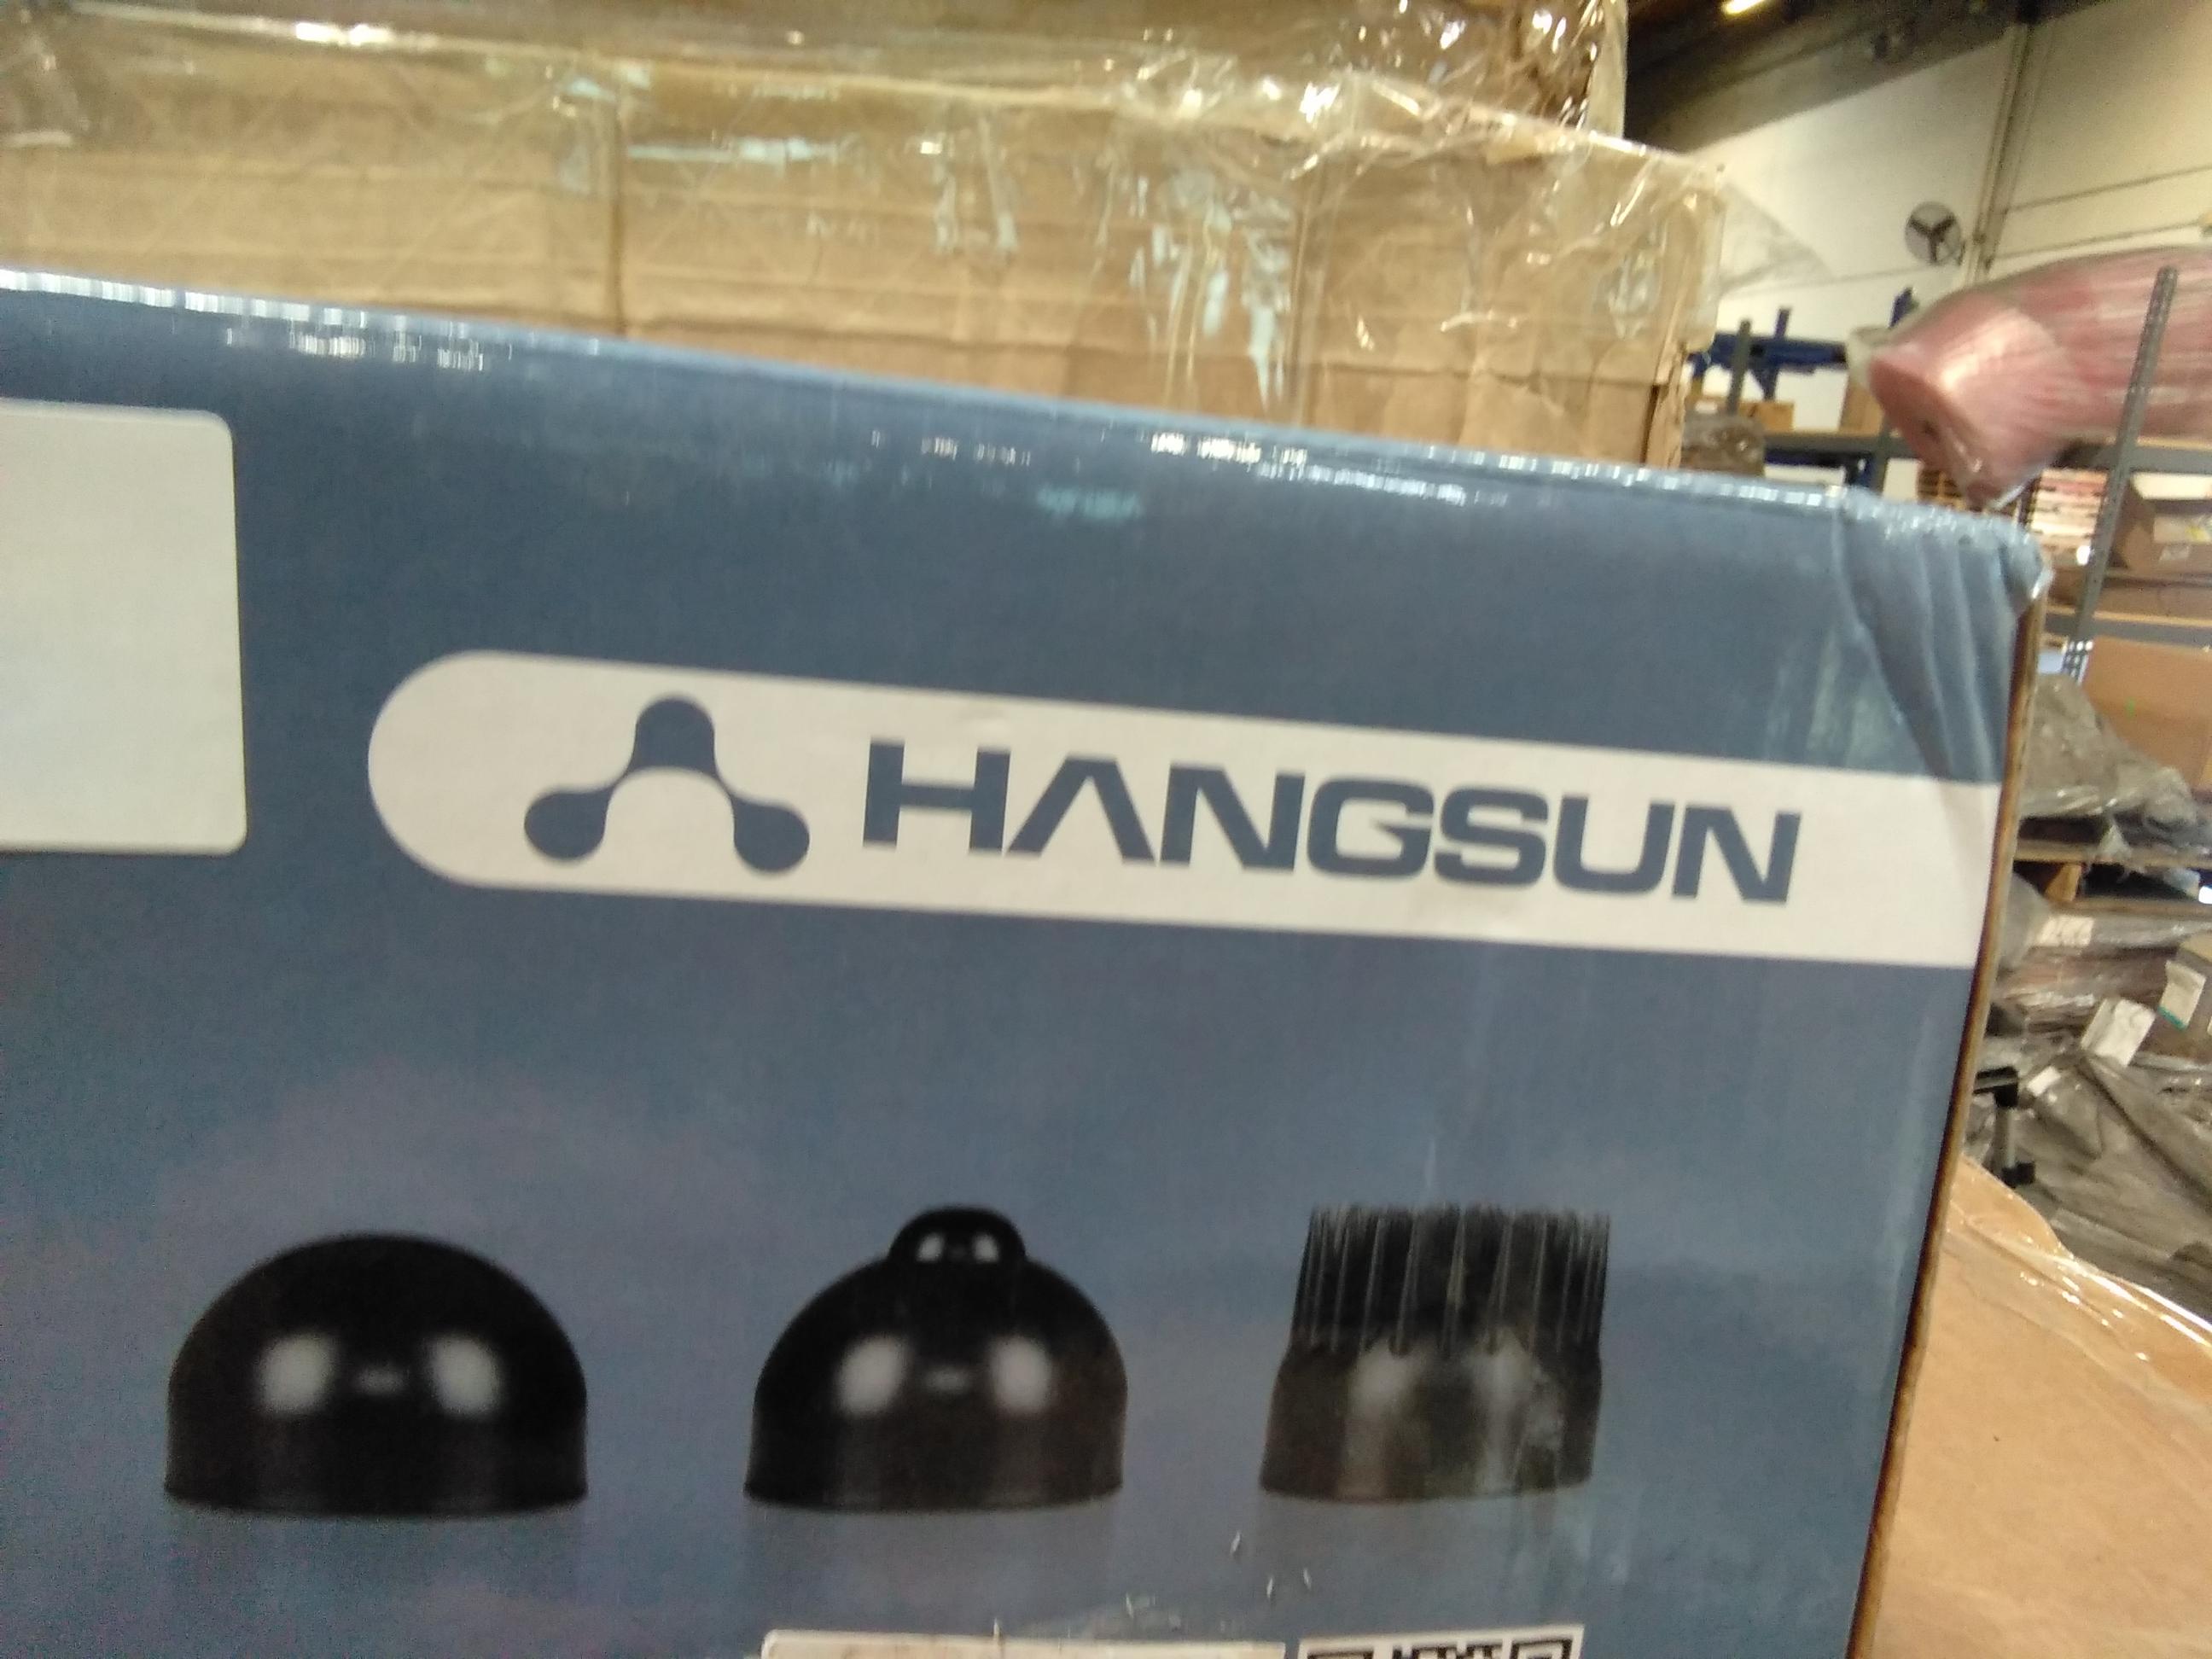 Hangsun Handheld Back Massager Mg400 Electric Neck Shoulder Deep Tissue Massage. $56 MSRP